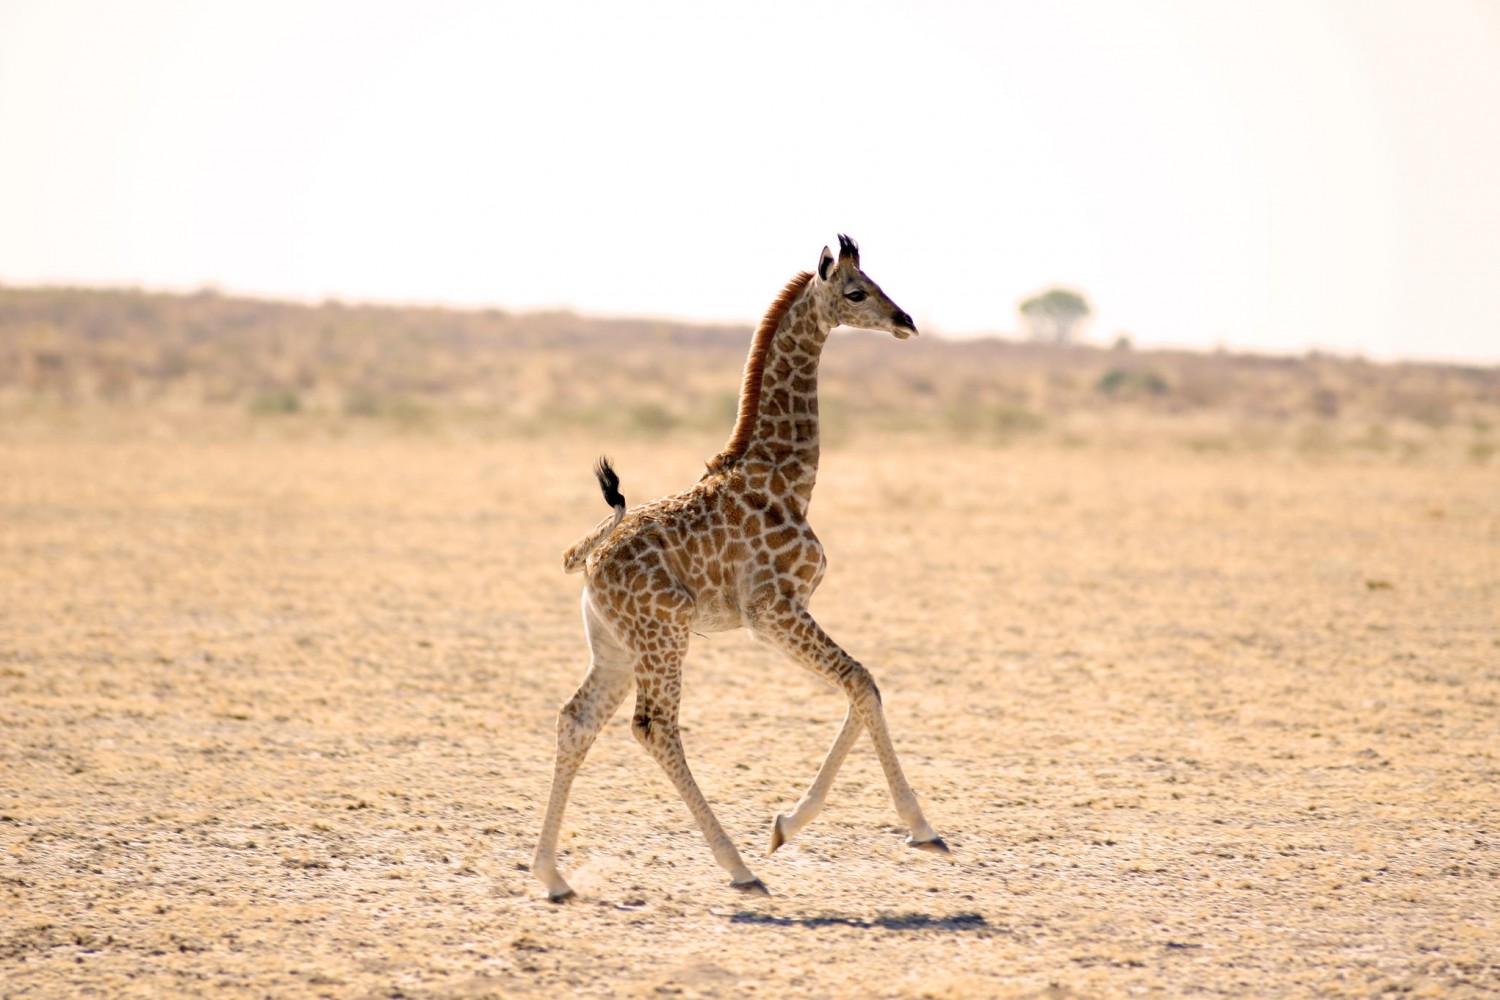 25 Best Photos of Cute Baby Giraffes